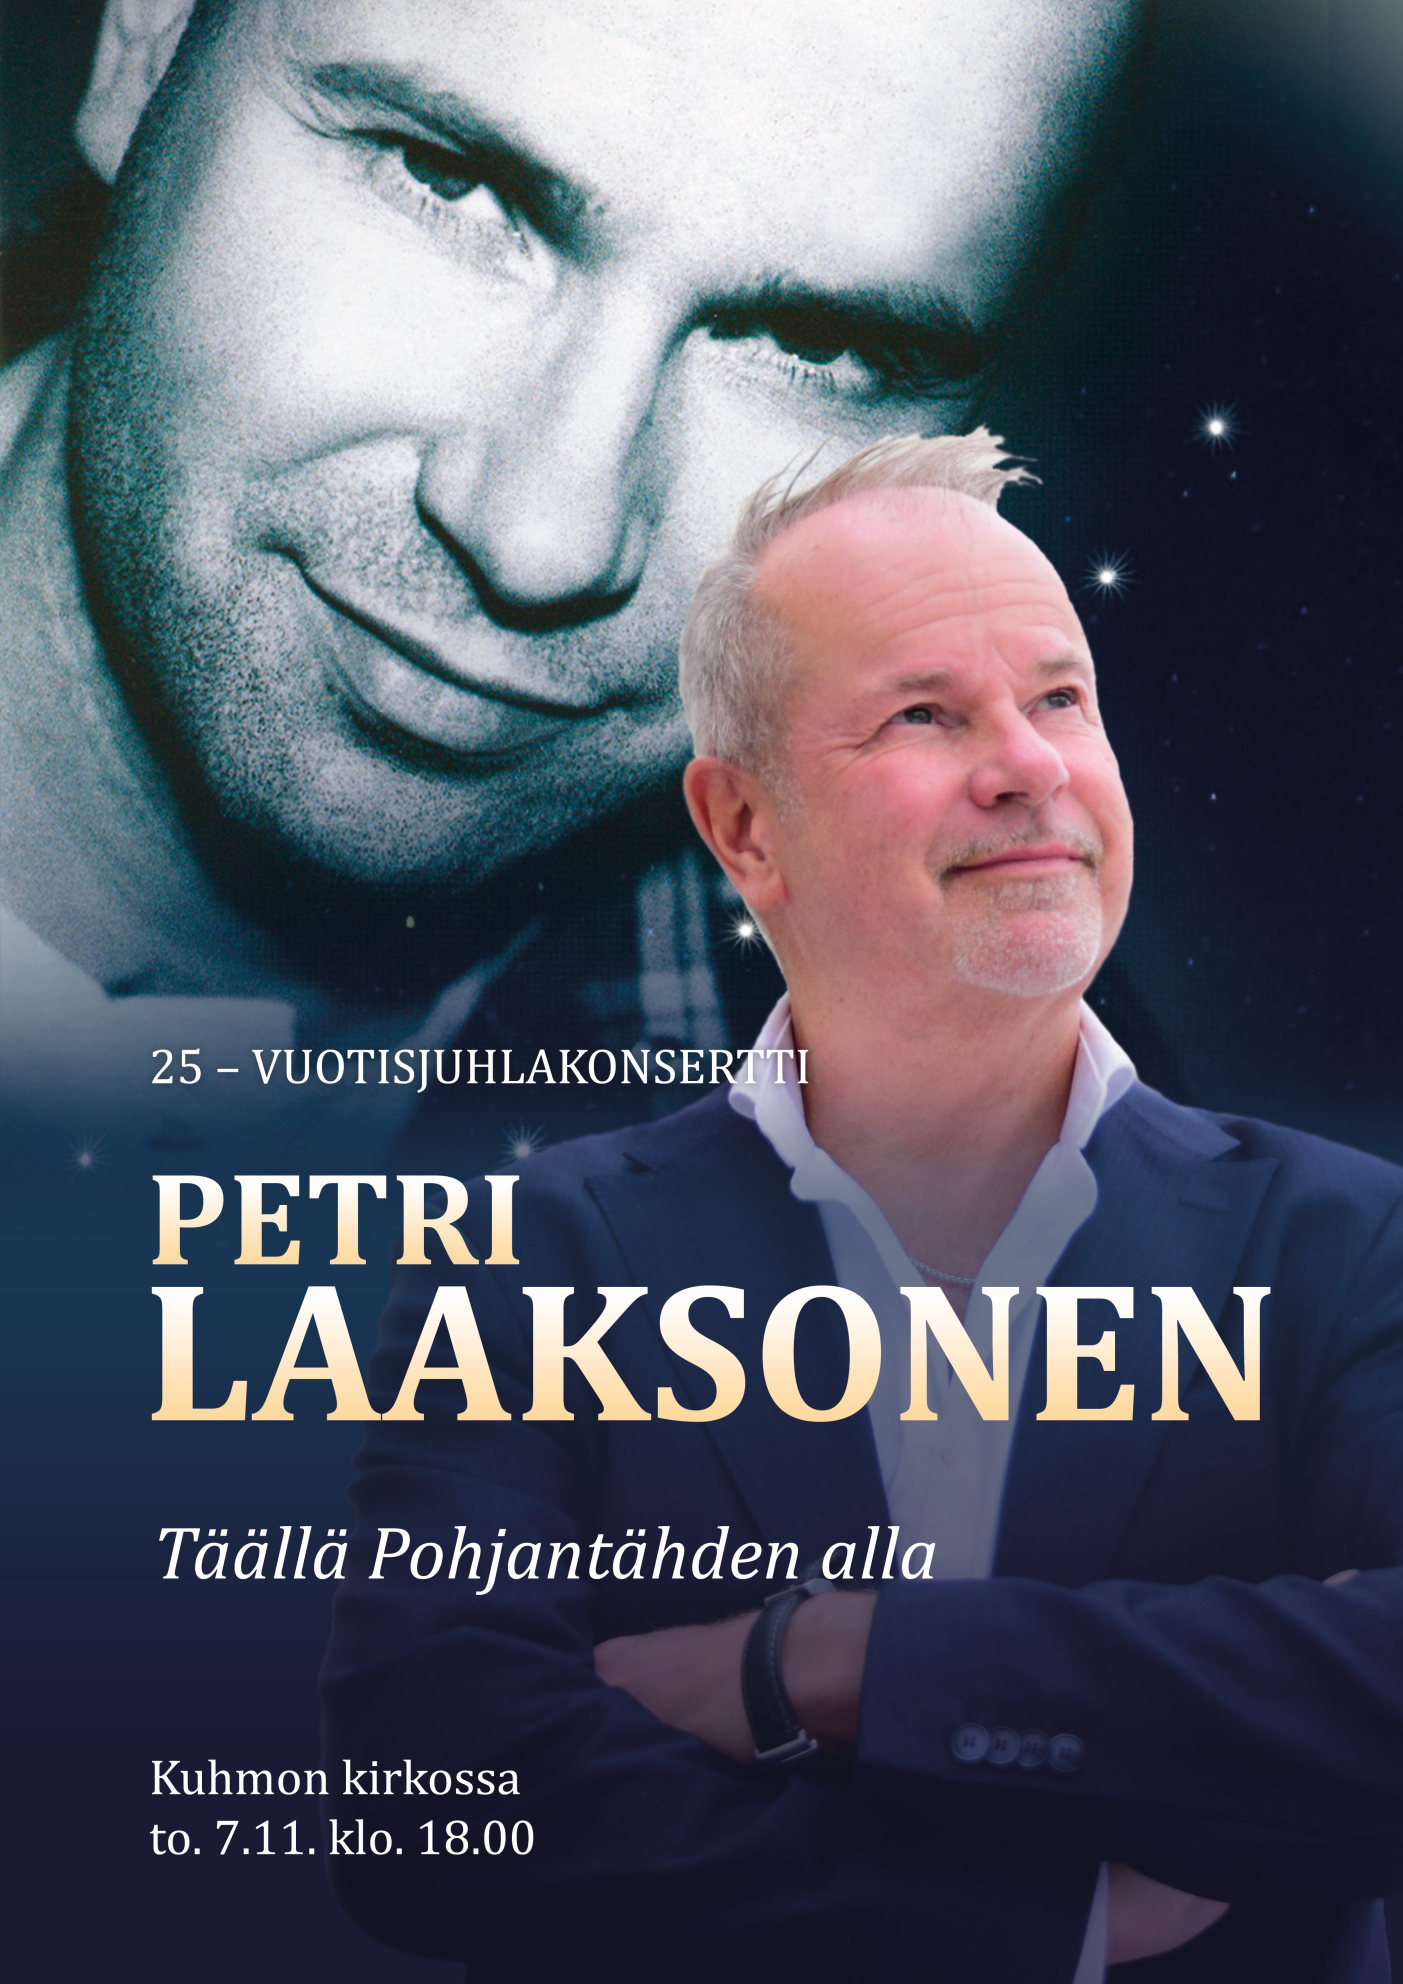 Petri Laaksosen 25-vuotisjuhlakonsertti torstaina 7. marraskuuta kello 18.00 Kuhmon kirkossa.